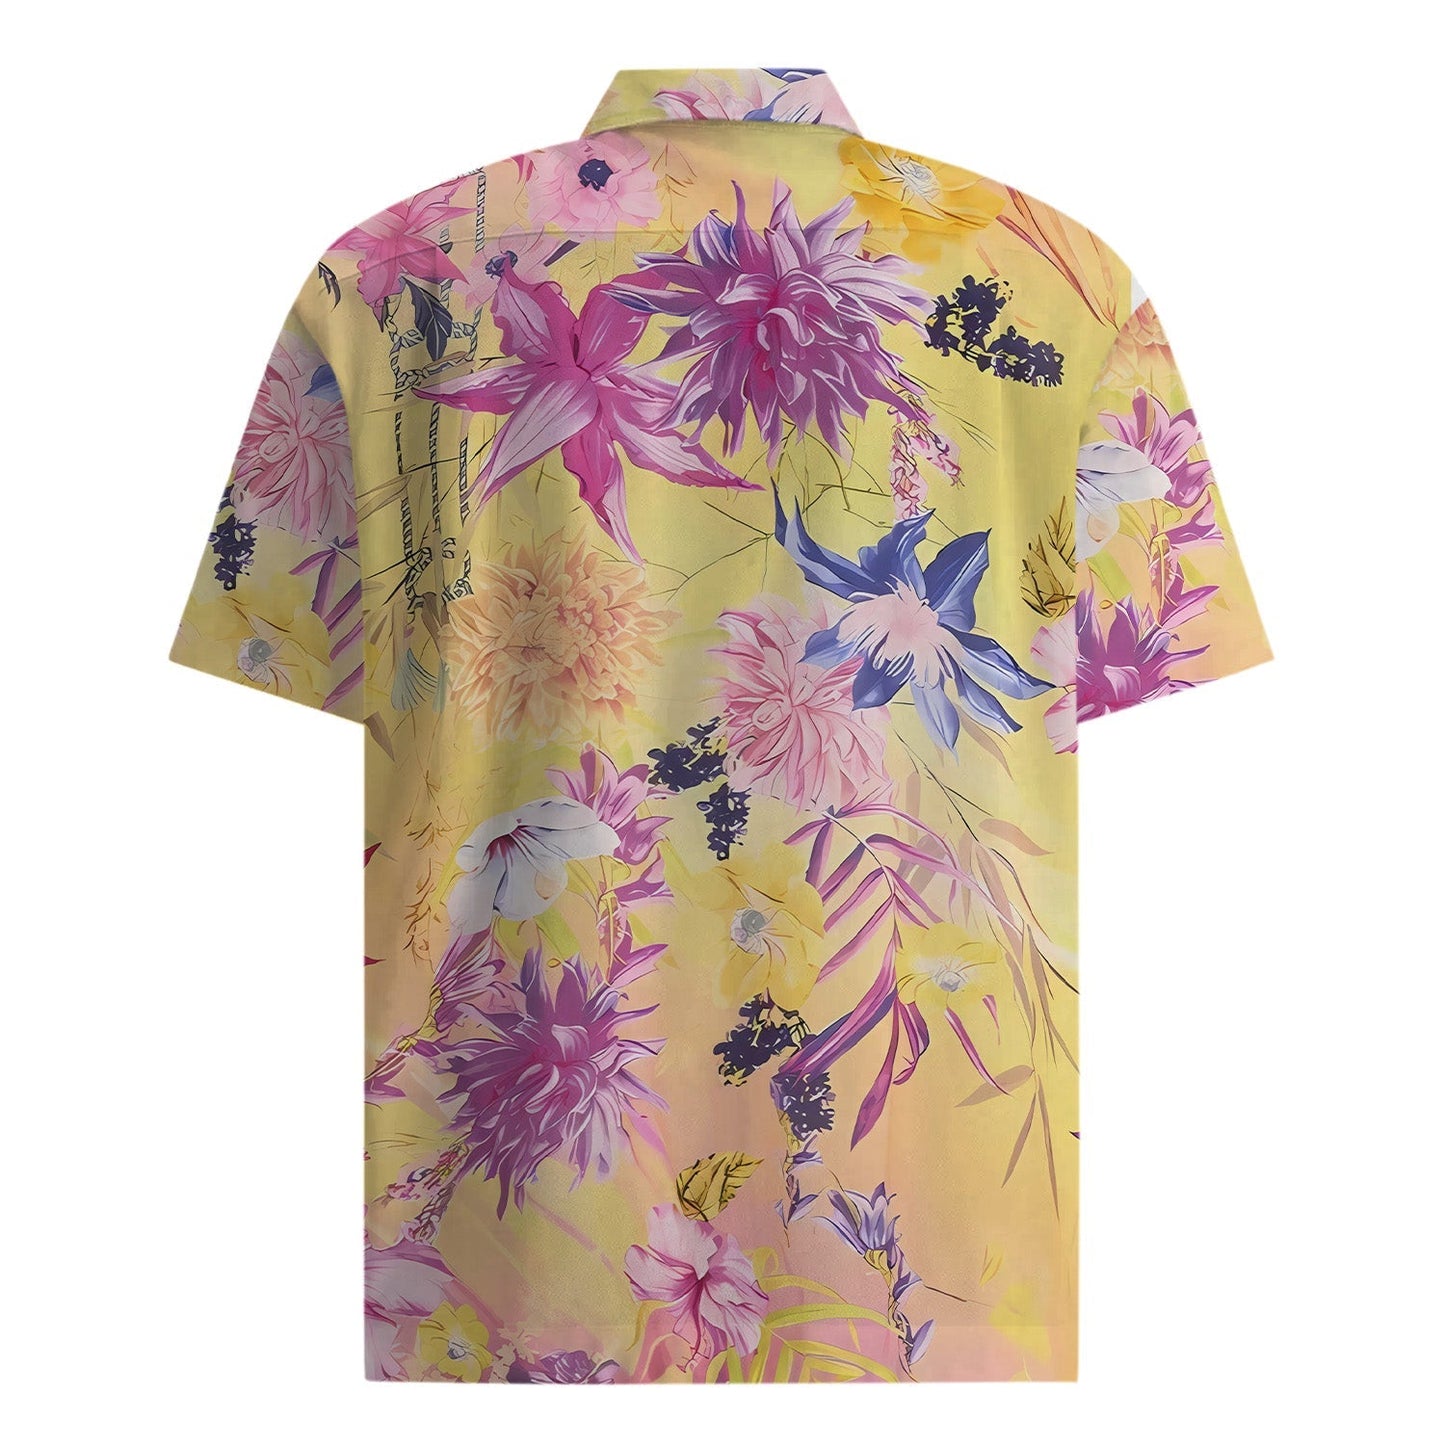 Tropical Style Flower Print Short Sleeve Shirt Jonvidesign